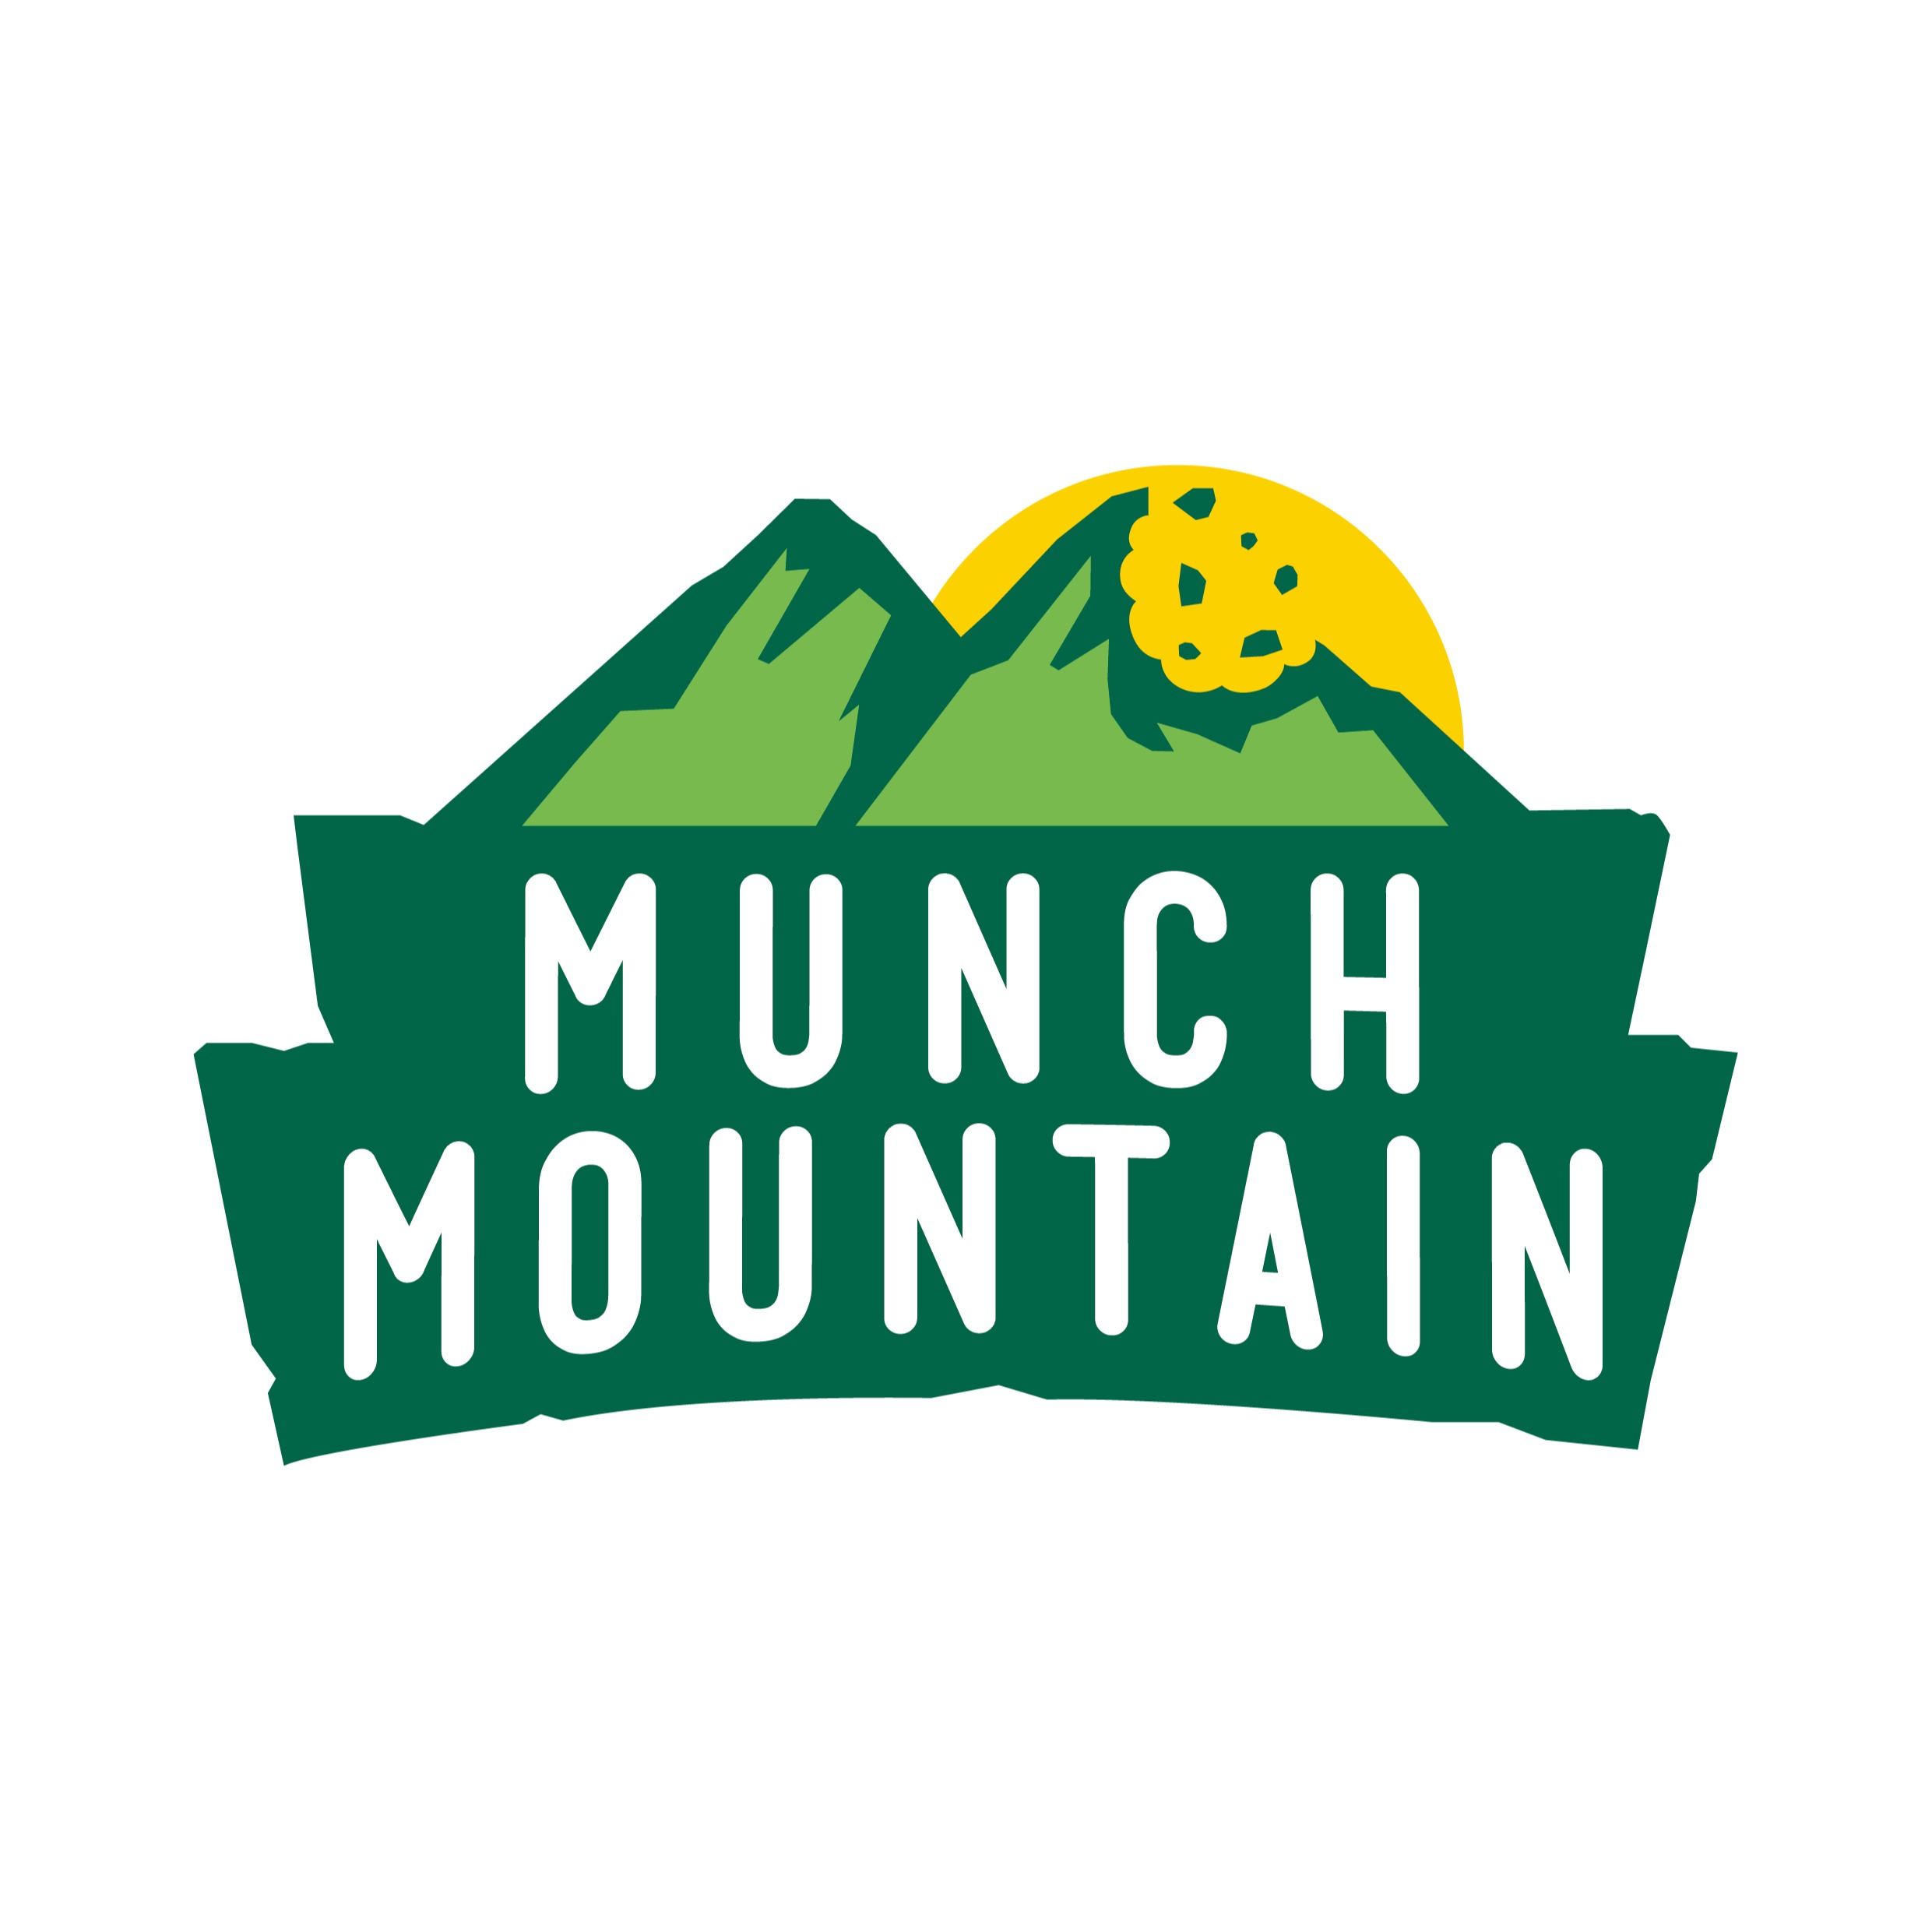 Munch _Mountain, Online Shop | Shopee Malaysia